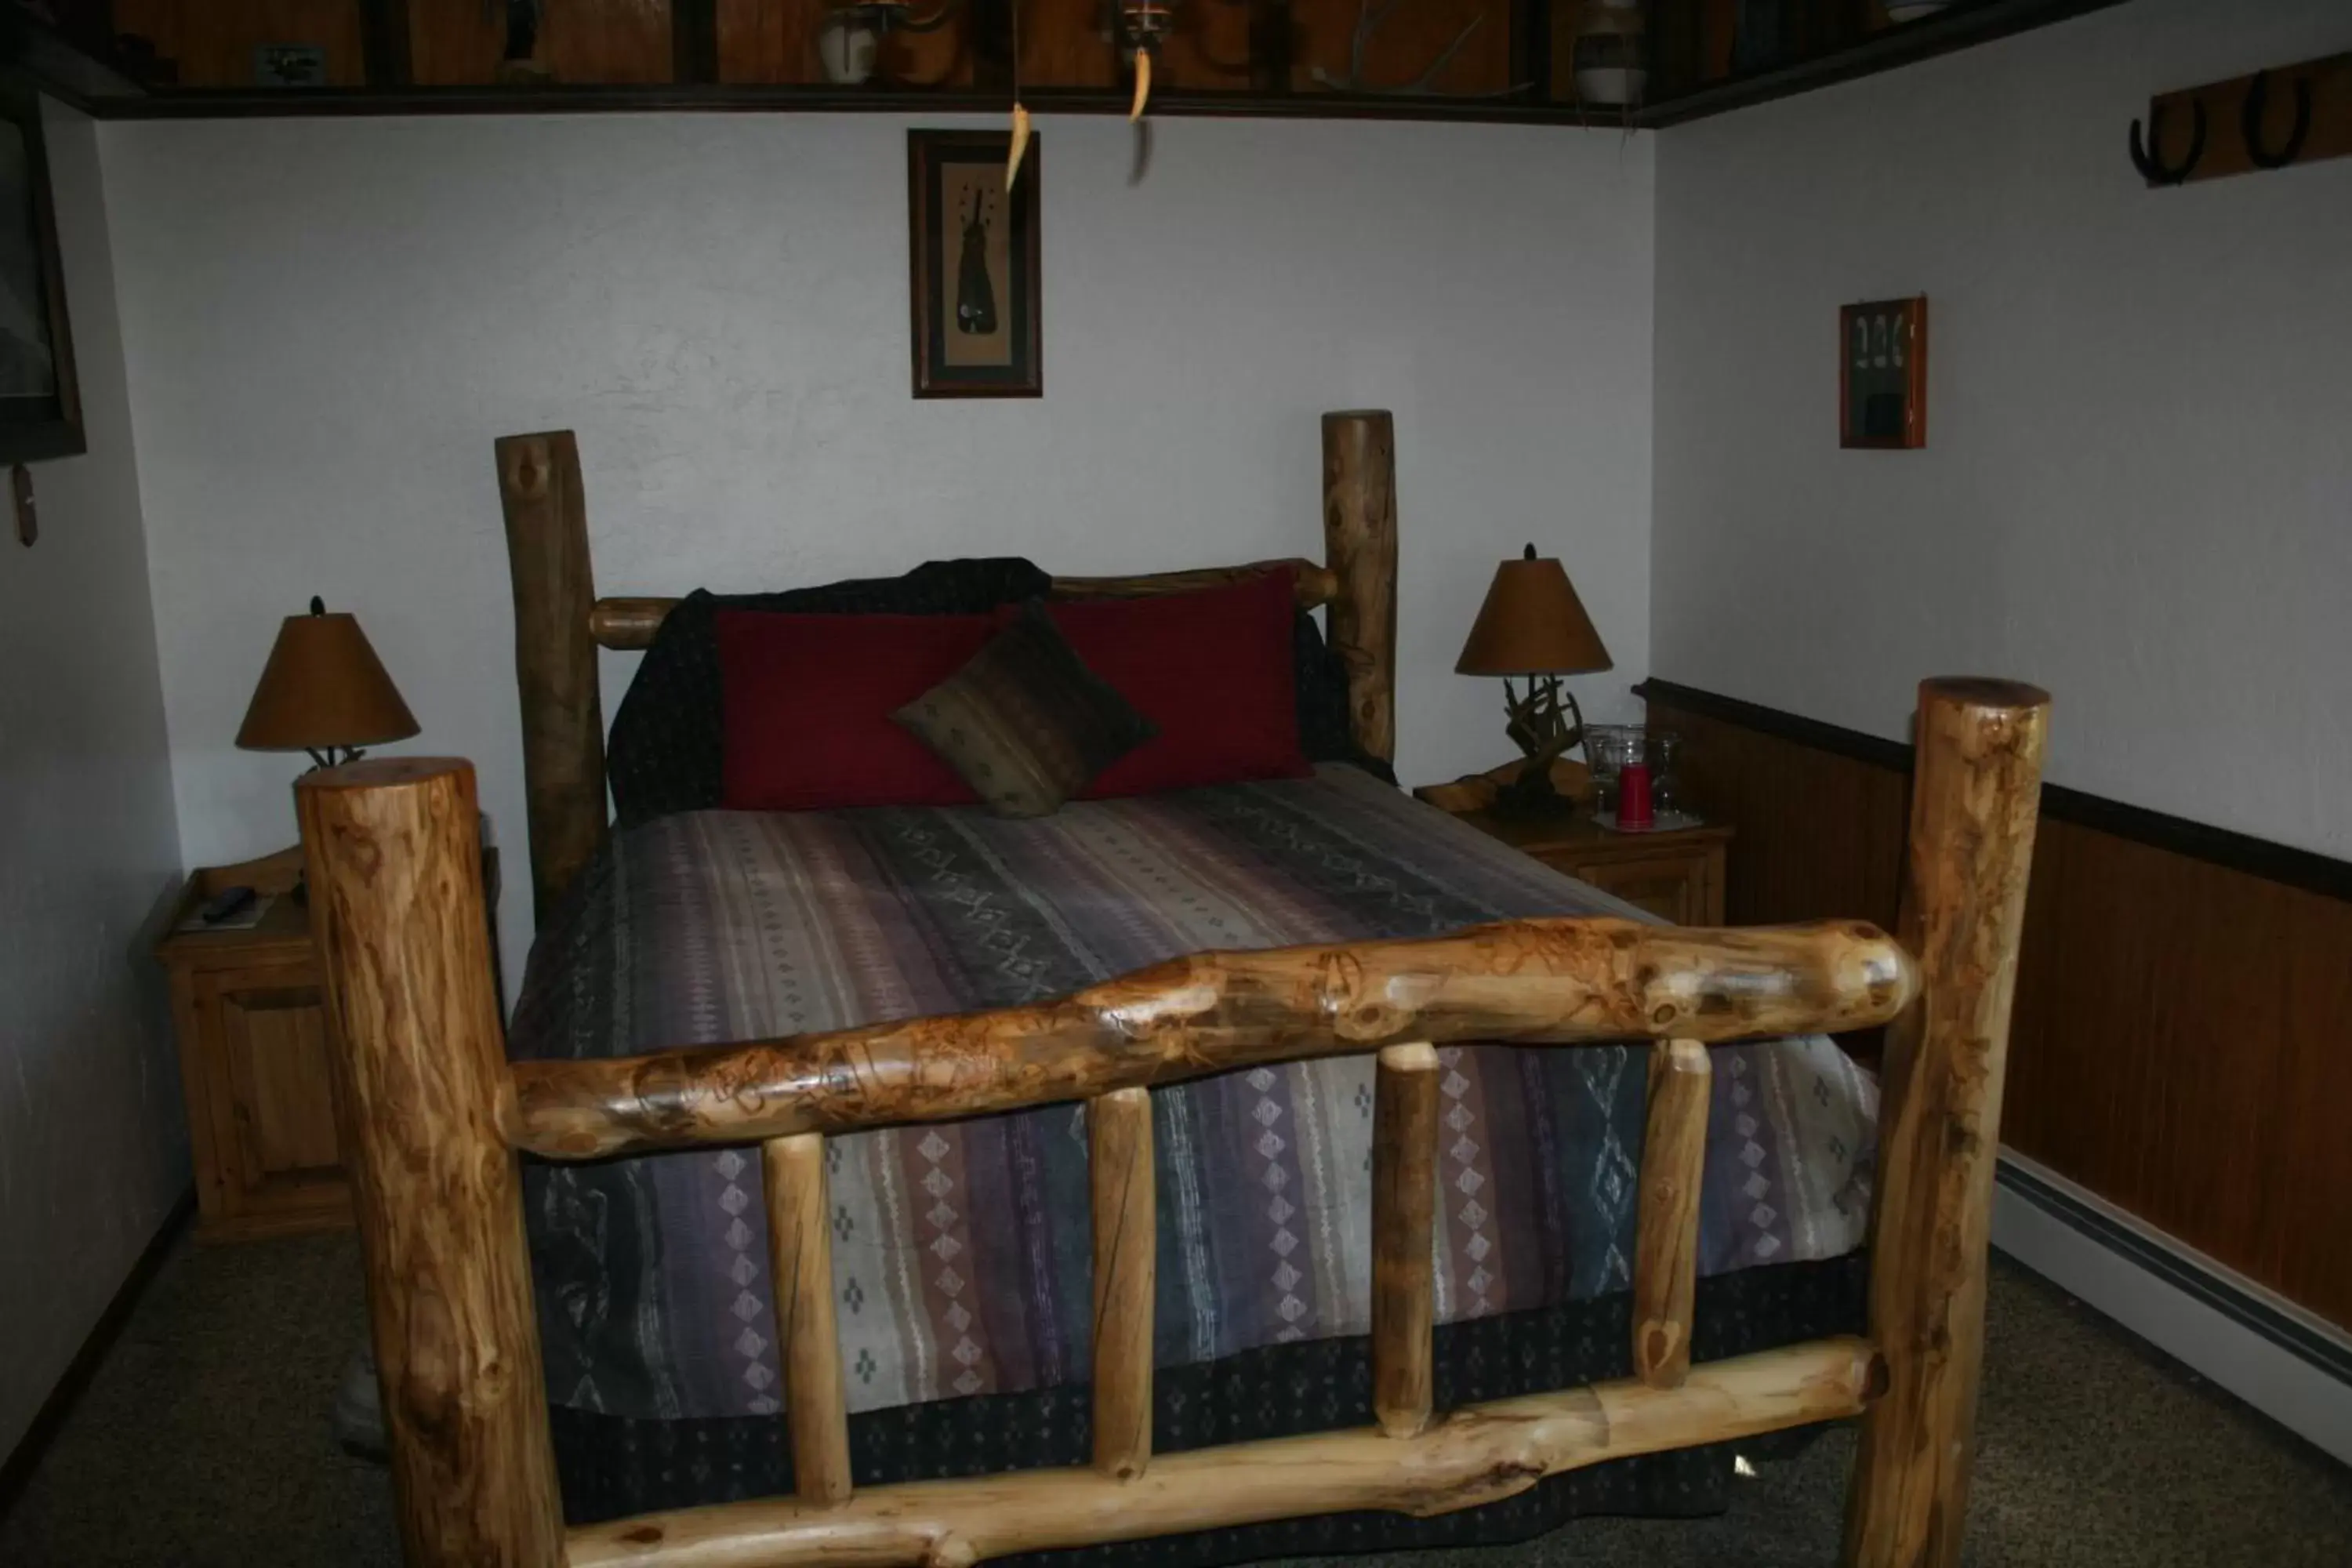 Bedroom, Bed in Dreamcatcher Bed and Breakfast